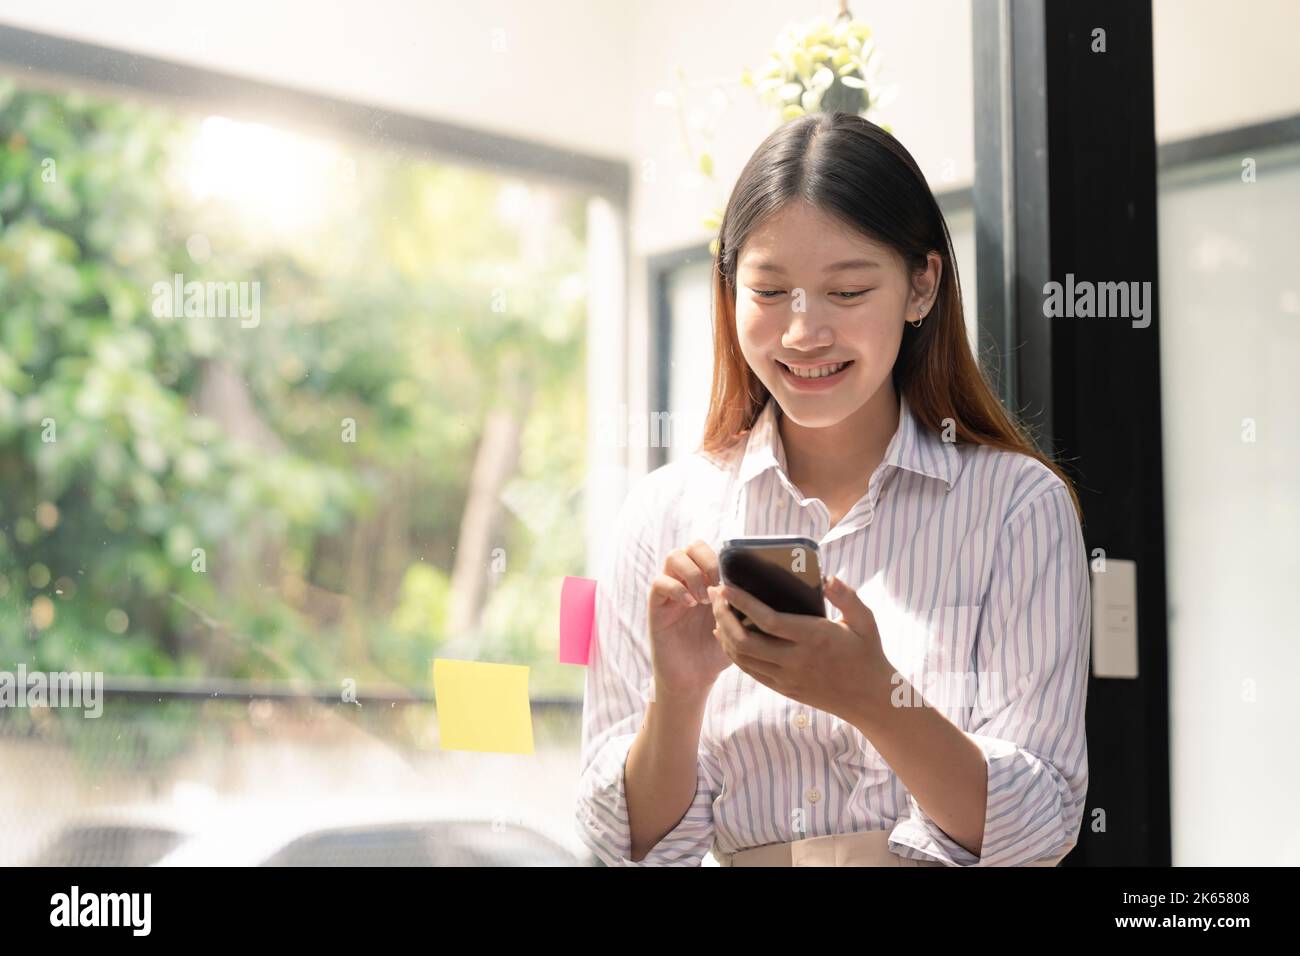 Eine schöne junge asiatische Frau, die Mobiltelefon hält und benutzt. Stockfoto